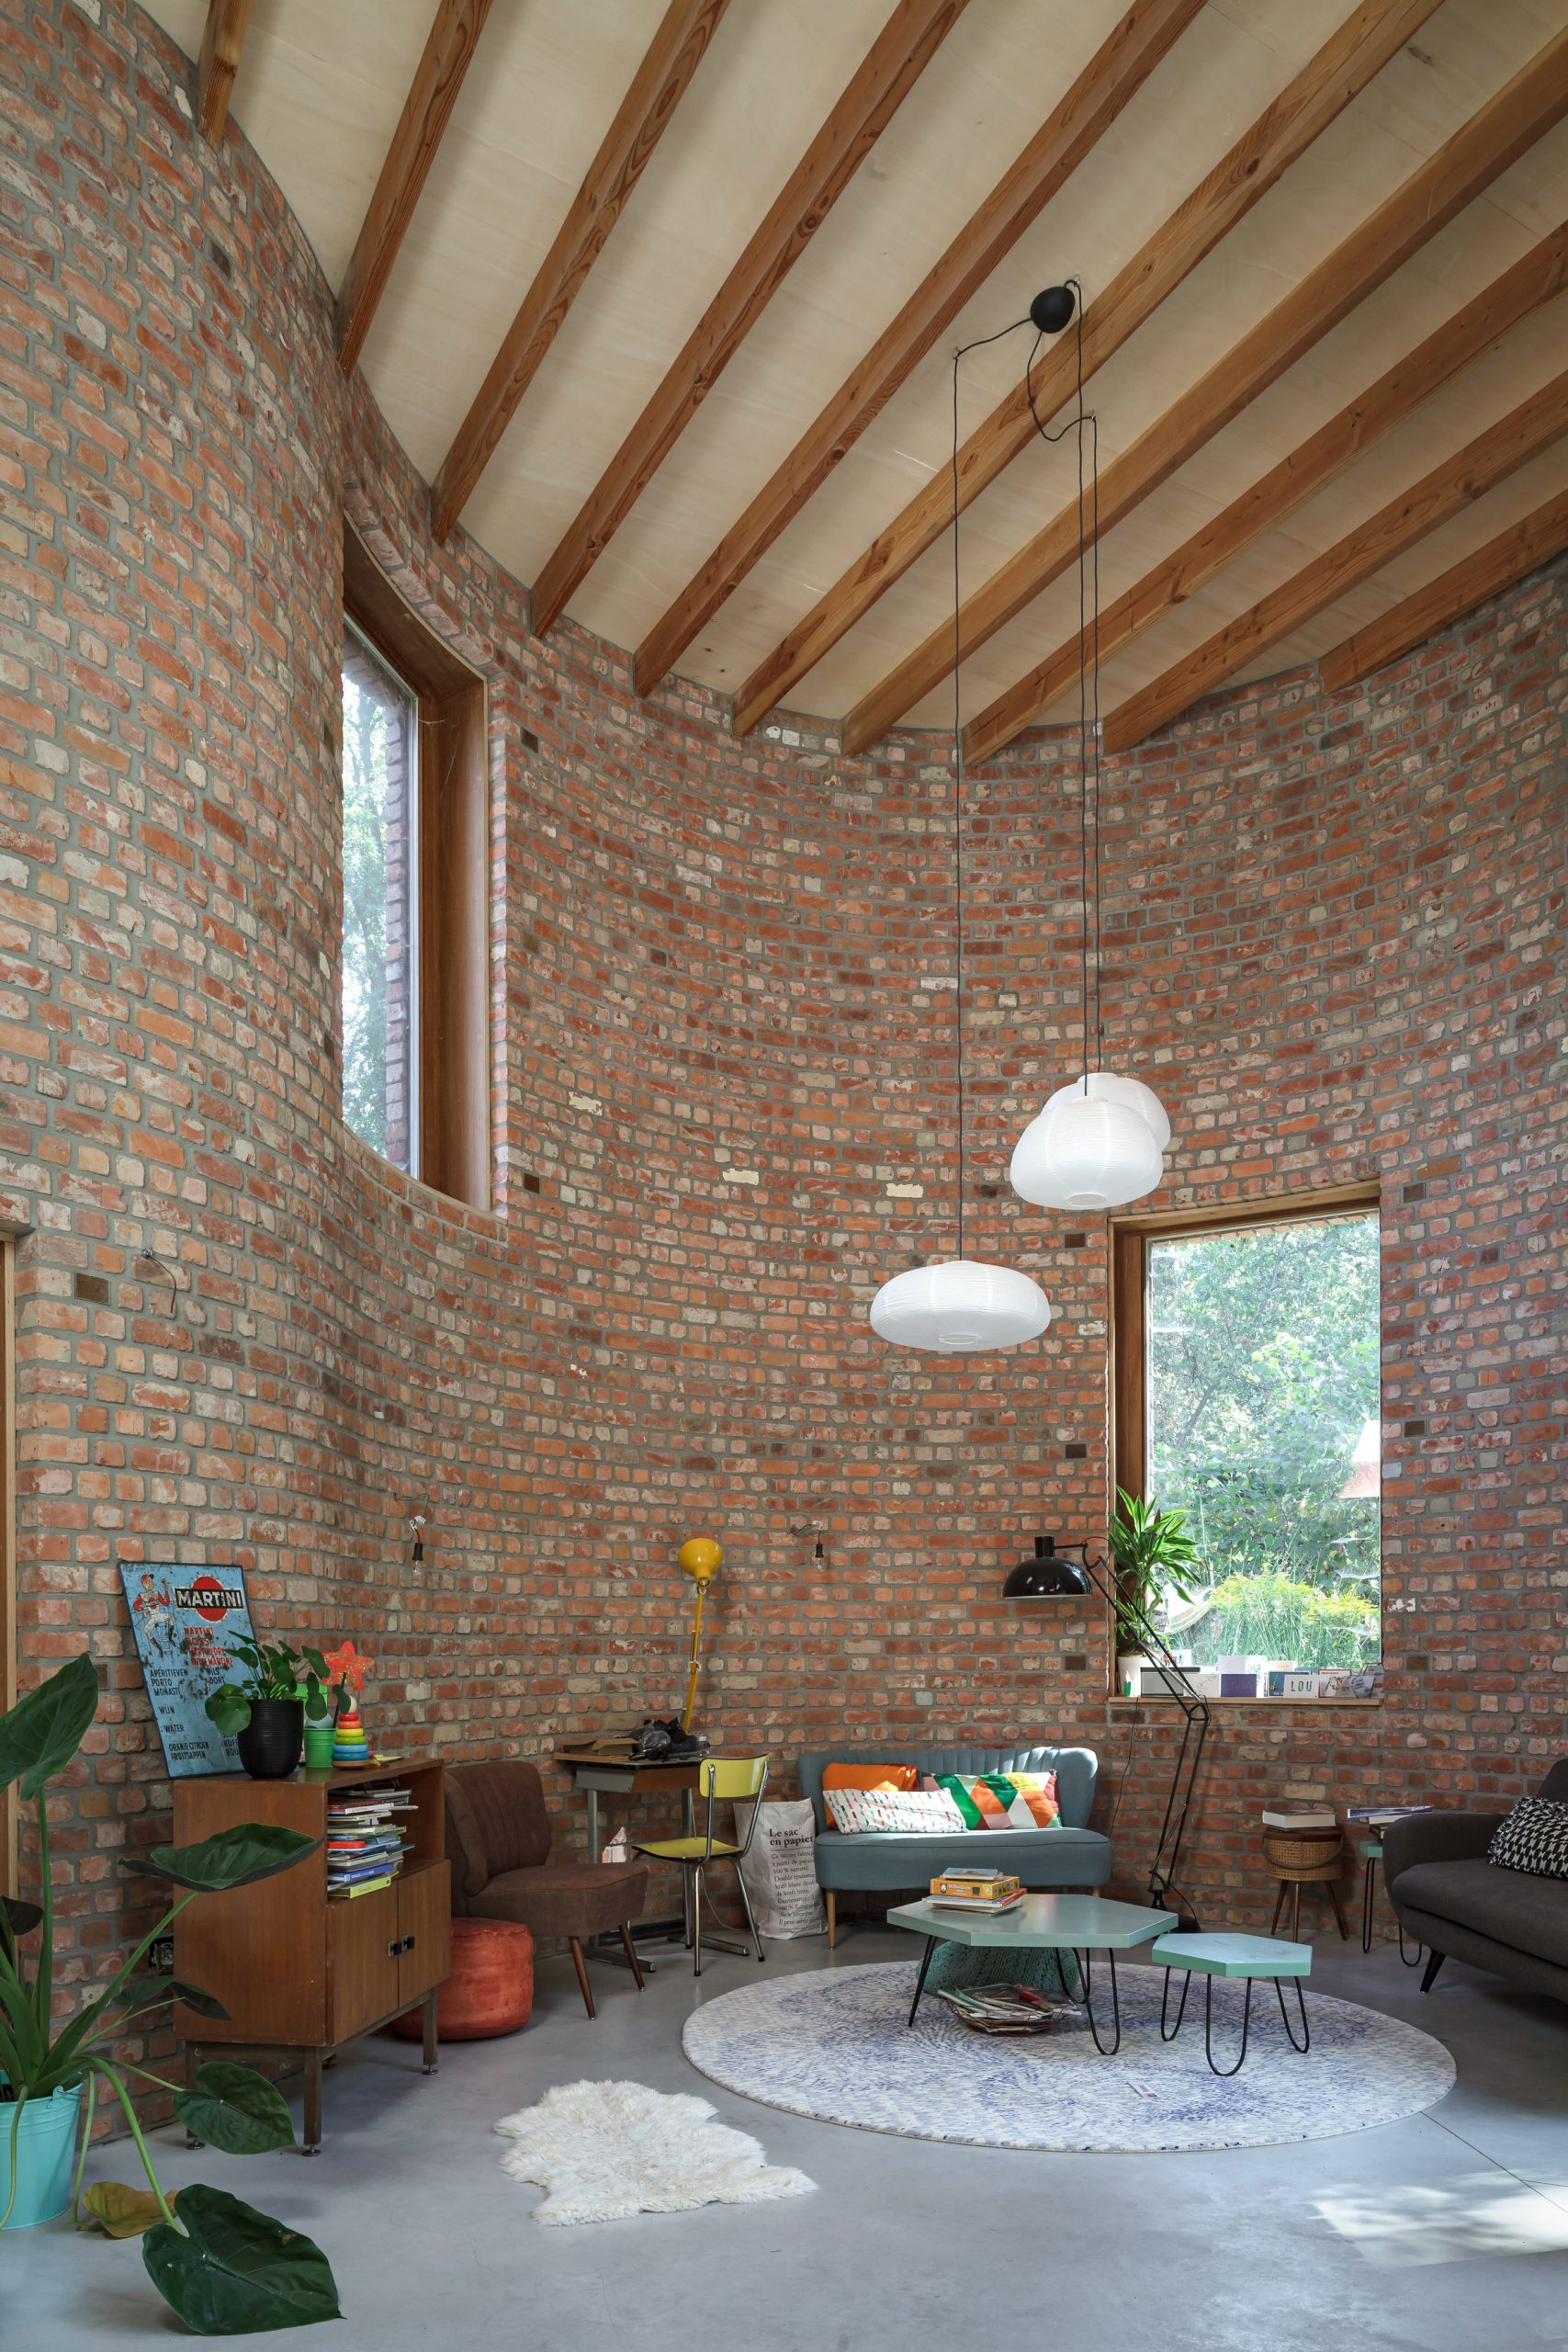 Bên trong ngôi nhà là không gian cực kỳ rộng rãi với trần nhà cao và dầm gỗ vững chãi. Nội thất được thiết kế đơn giản nhưng tiện nghi, đáp ứng đầy đủ các nhu cầu cơ bản.